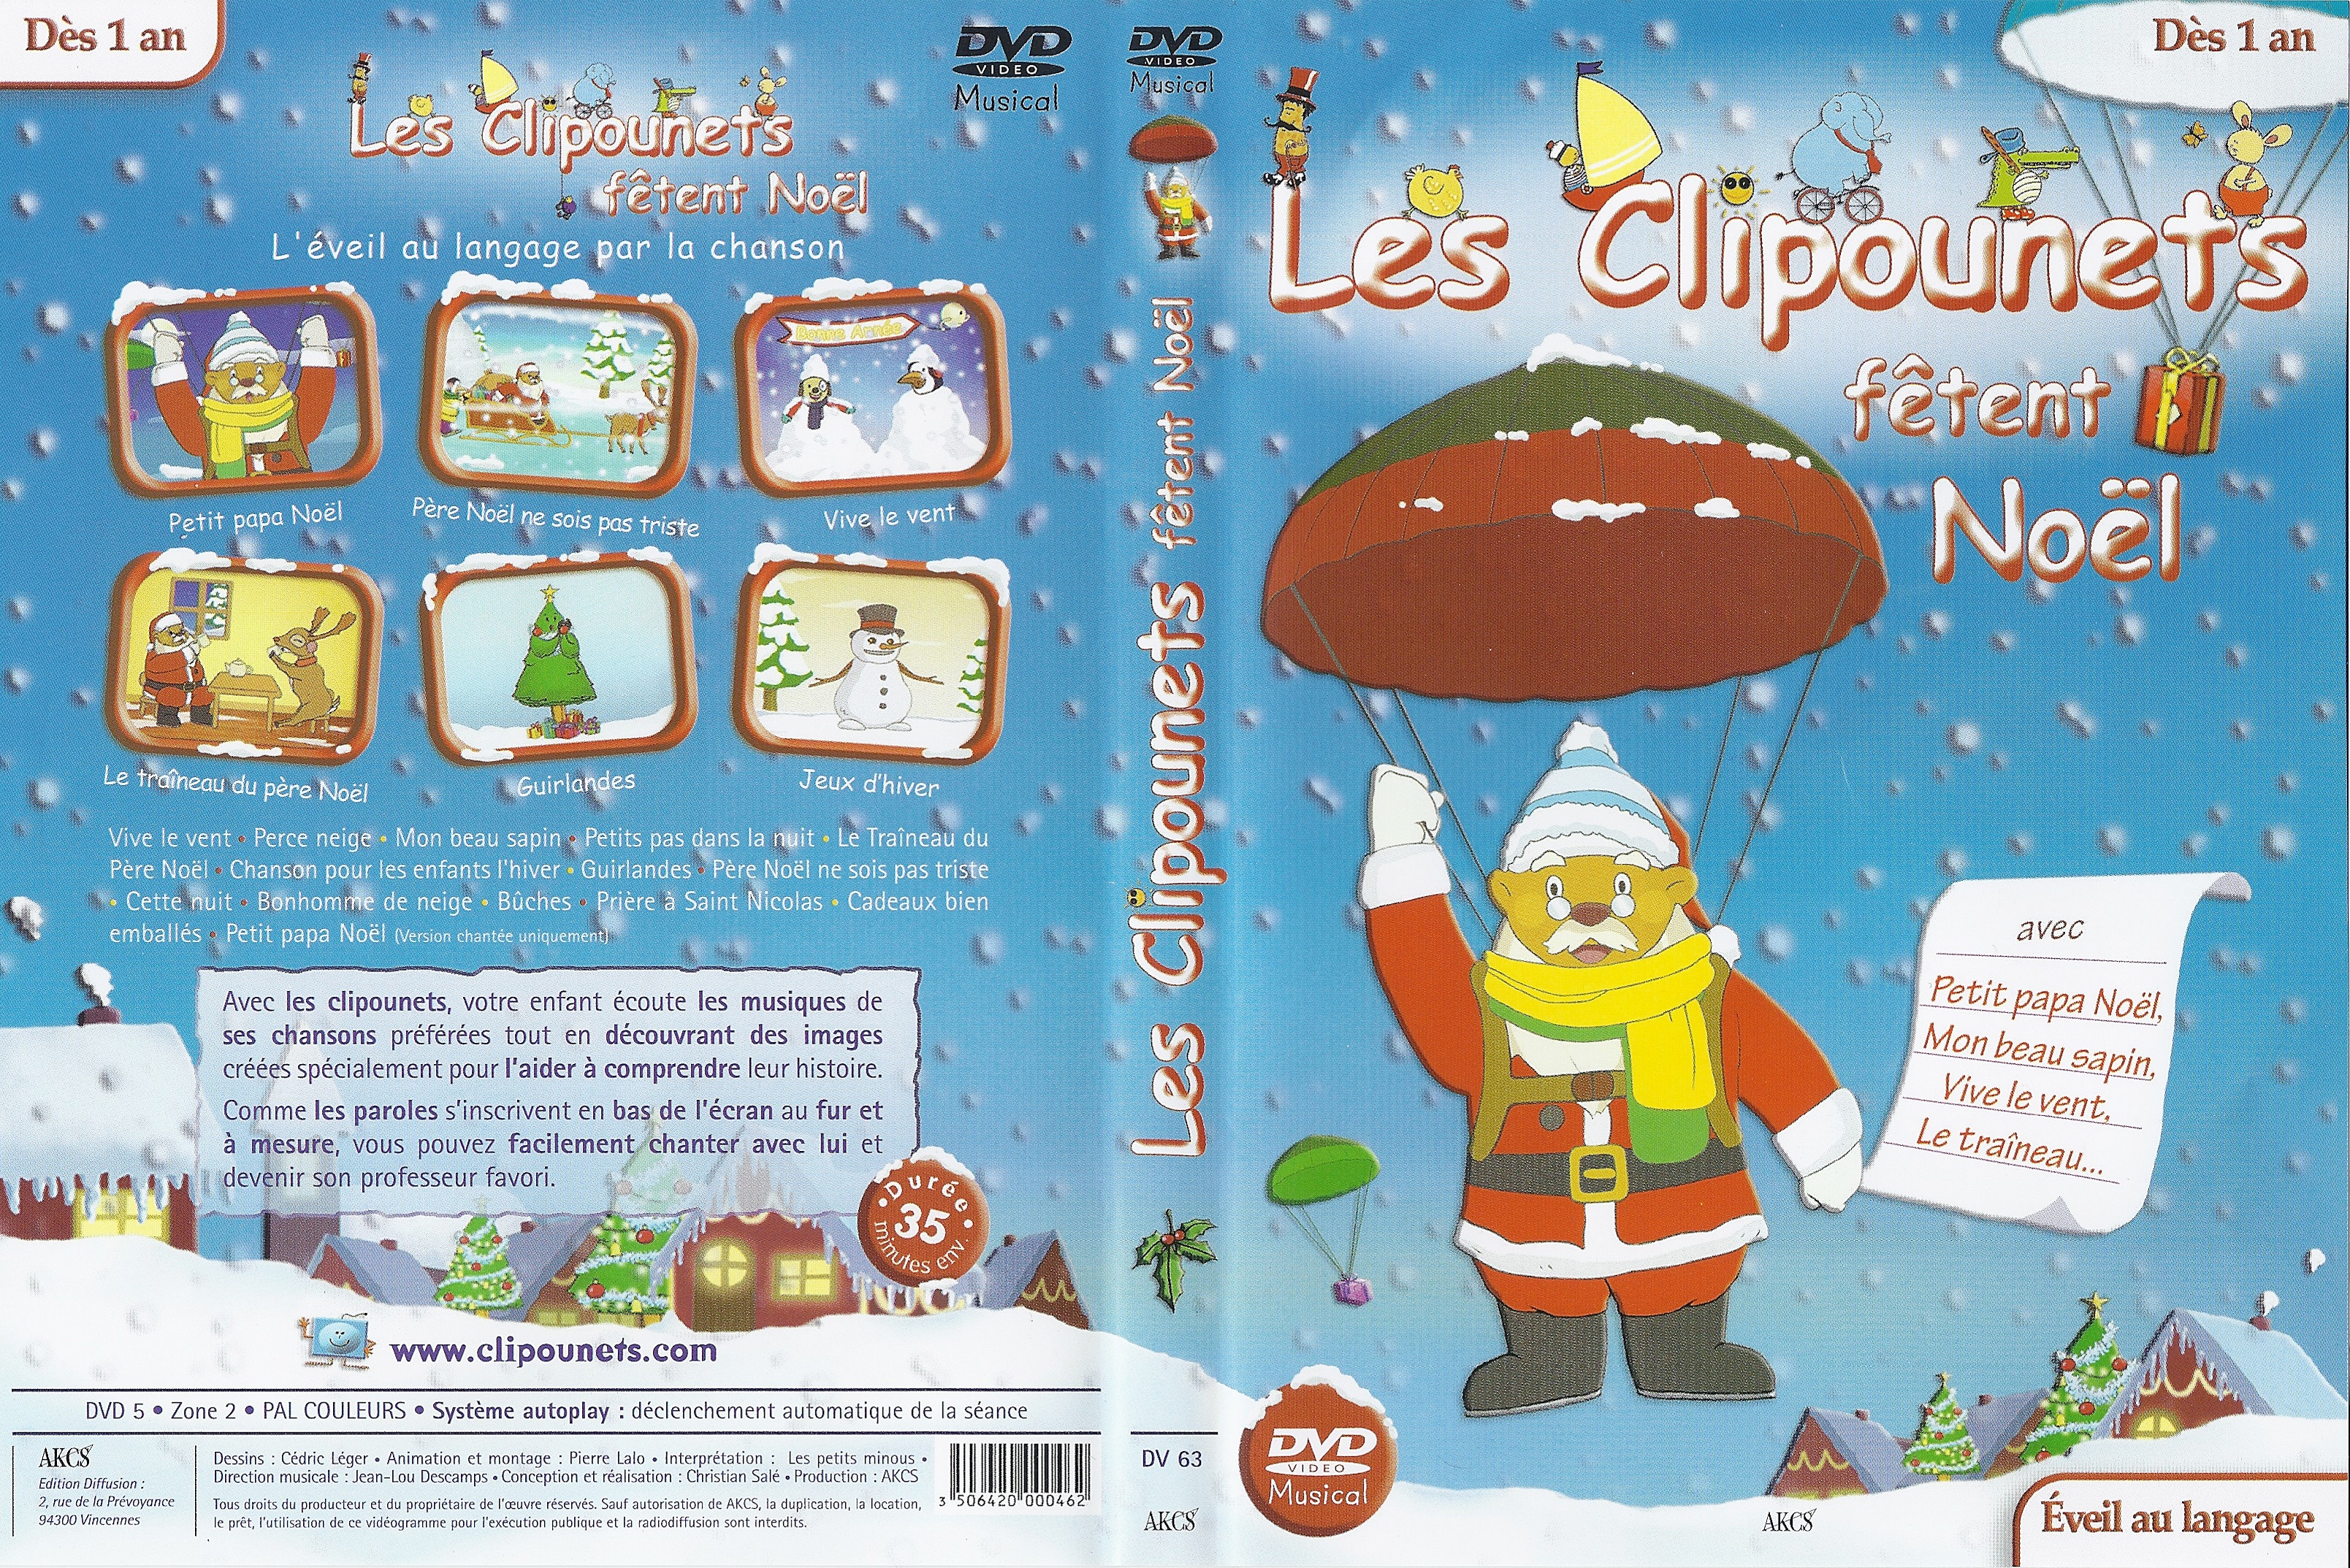 Jaquette DVD Les clipounets ftent Noel